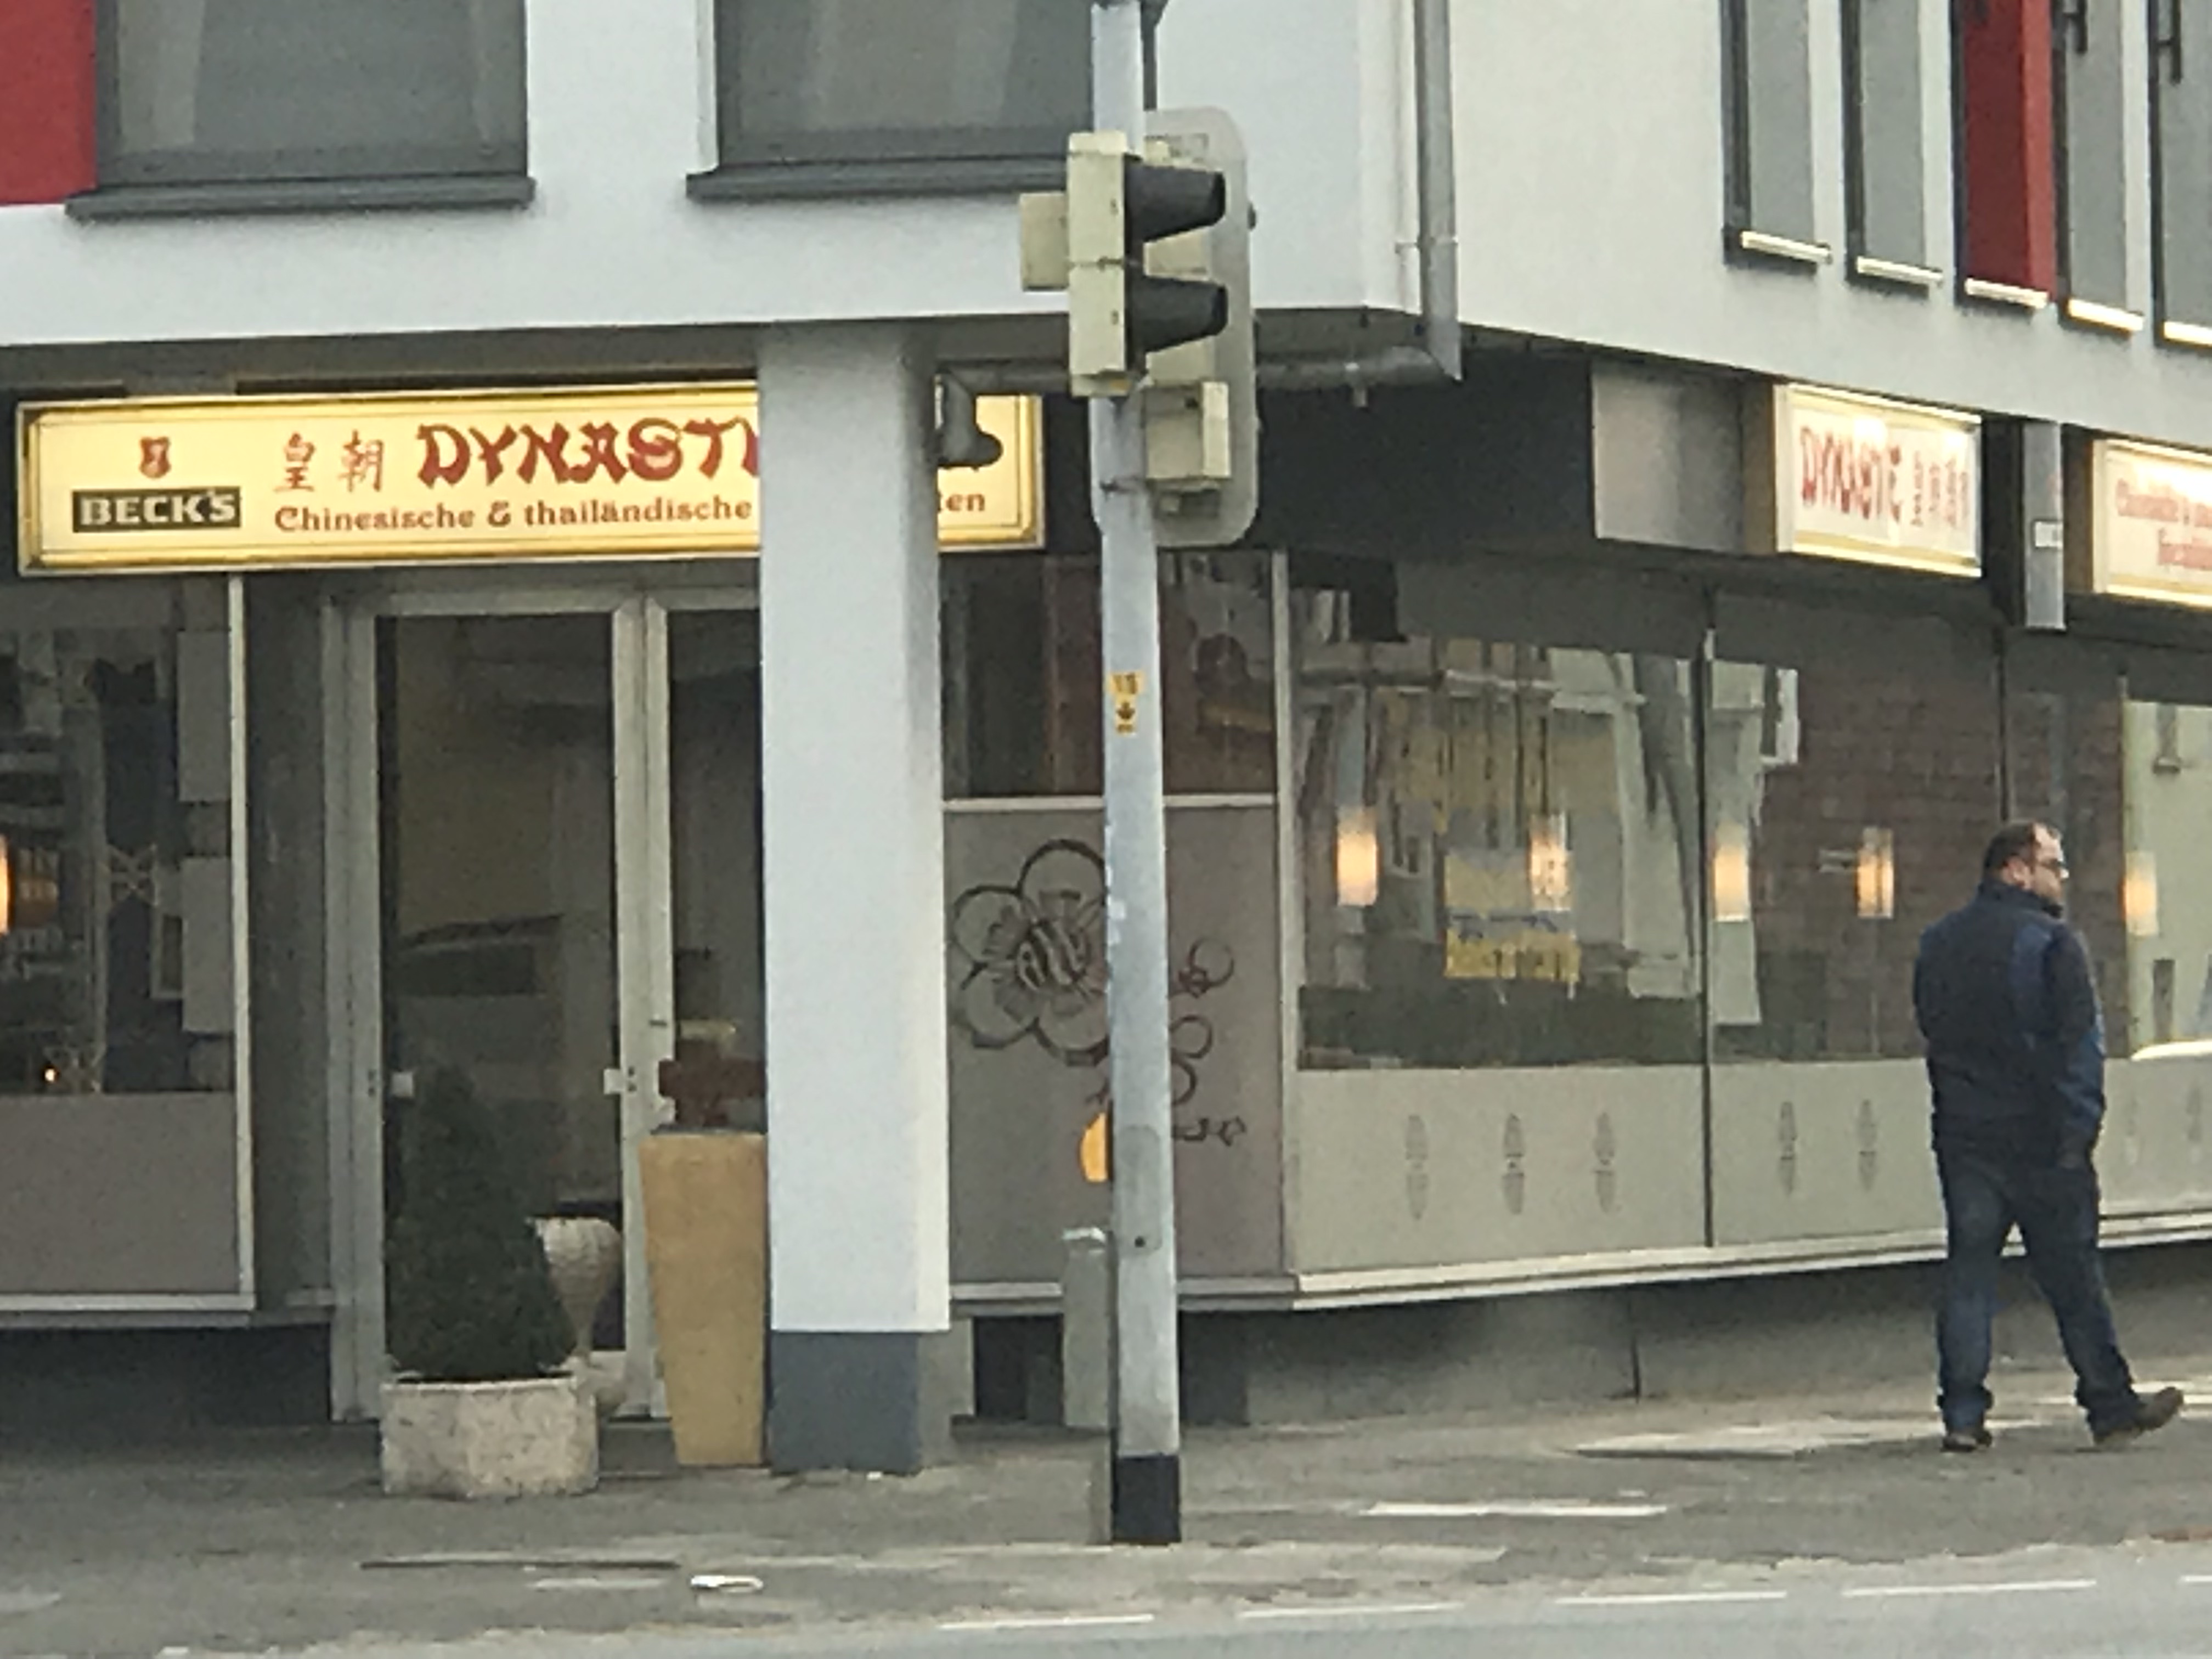 Bild 1 China-Restaurant "Dynastie" in Hameln